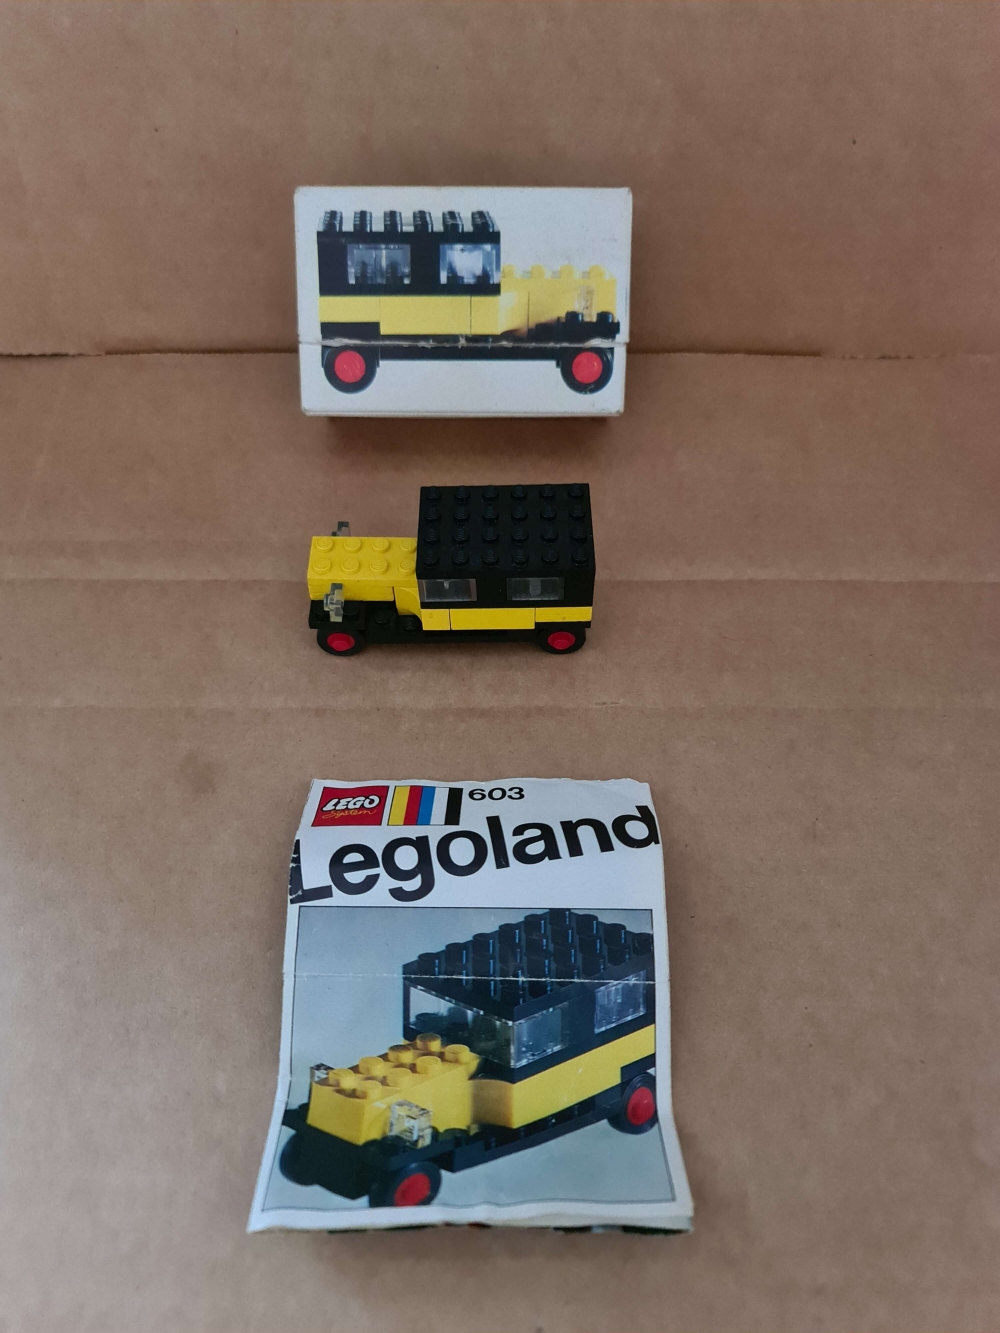 Sett 603-3 fra Lego Legoland serien.
Fint sett. Komplett med manual og eske.